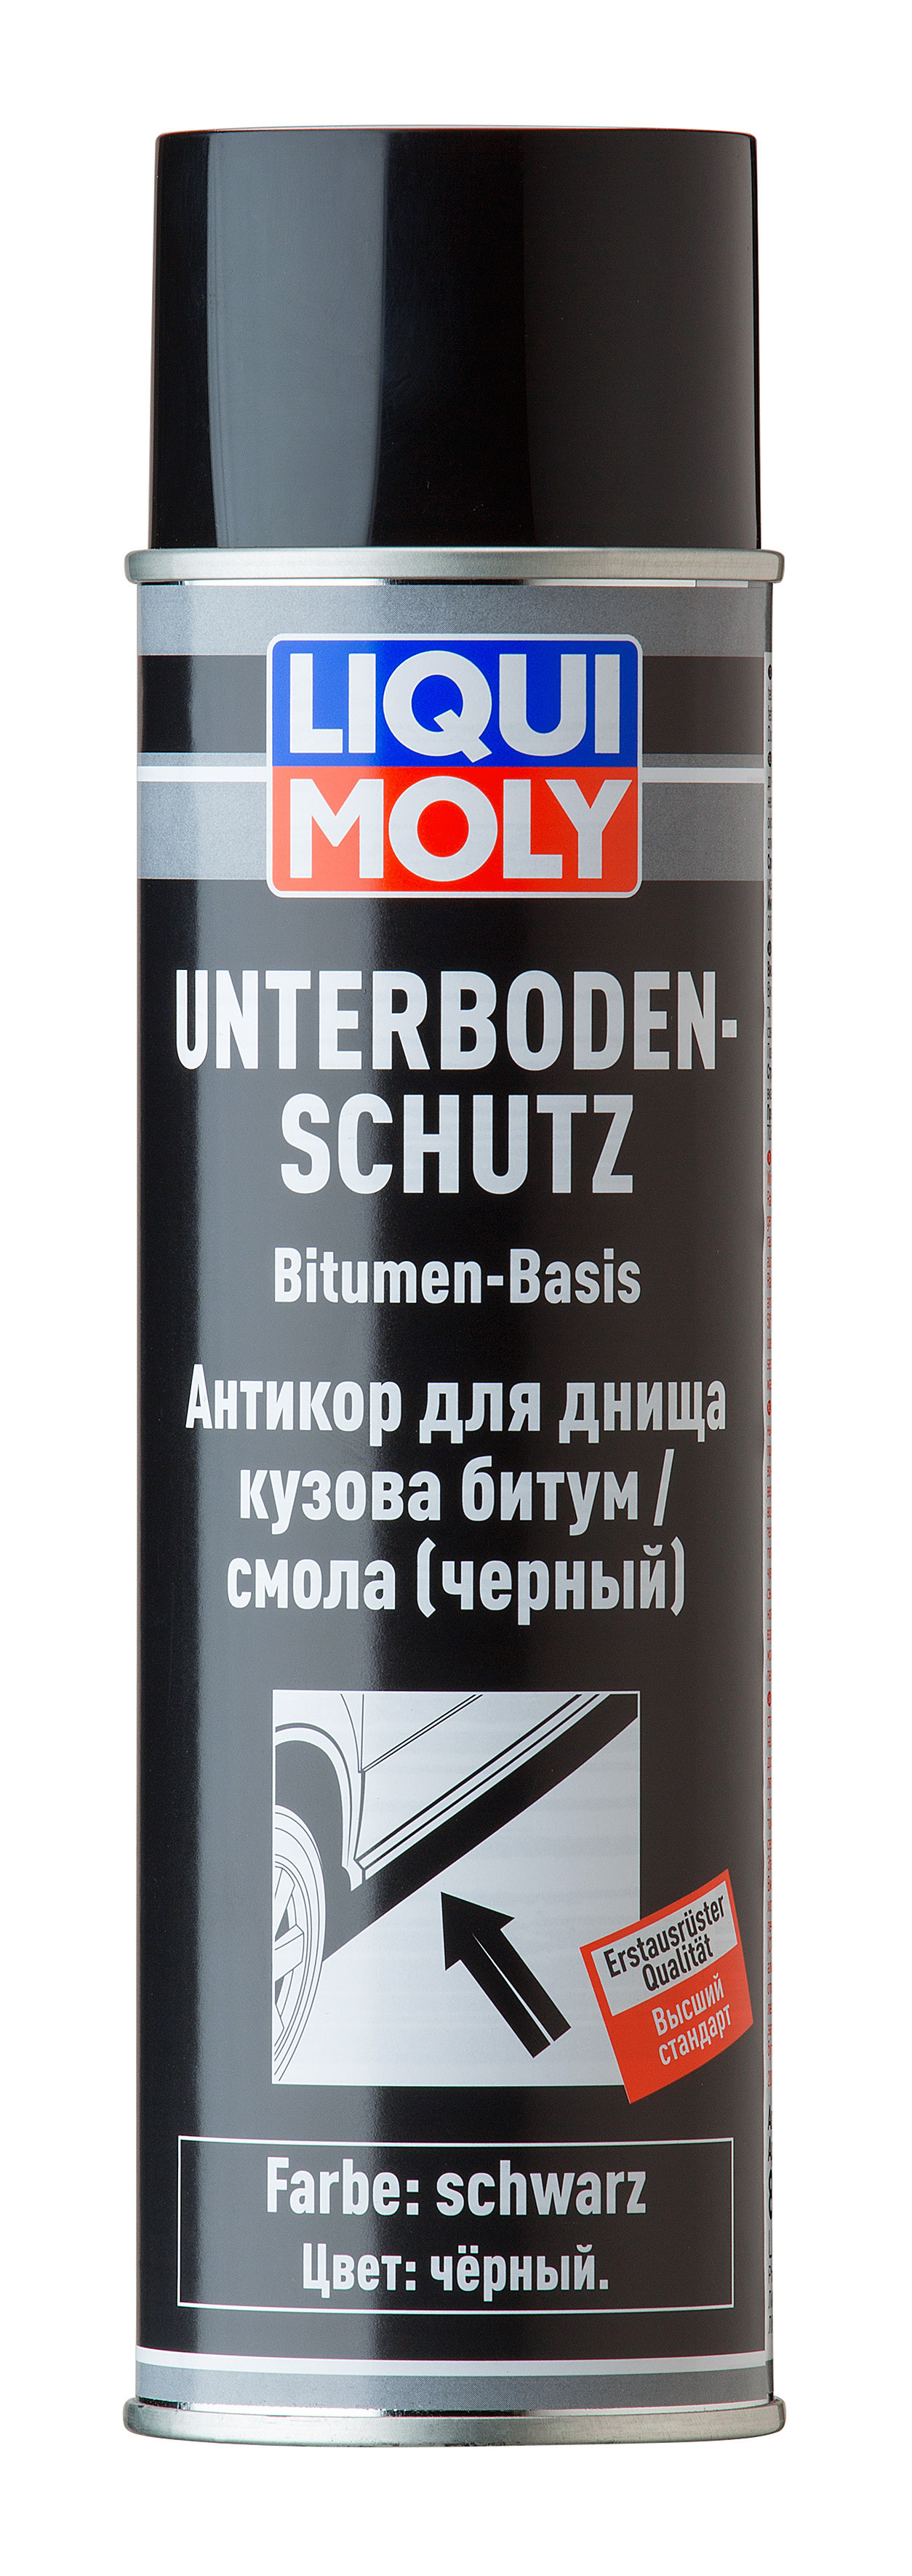 Антикор для днища кузова битум/смола (черный) 'Unterboden-Schutz Bitumen schwarz', 500мл